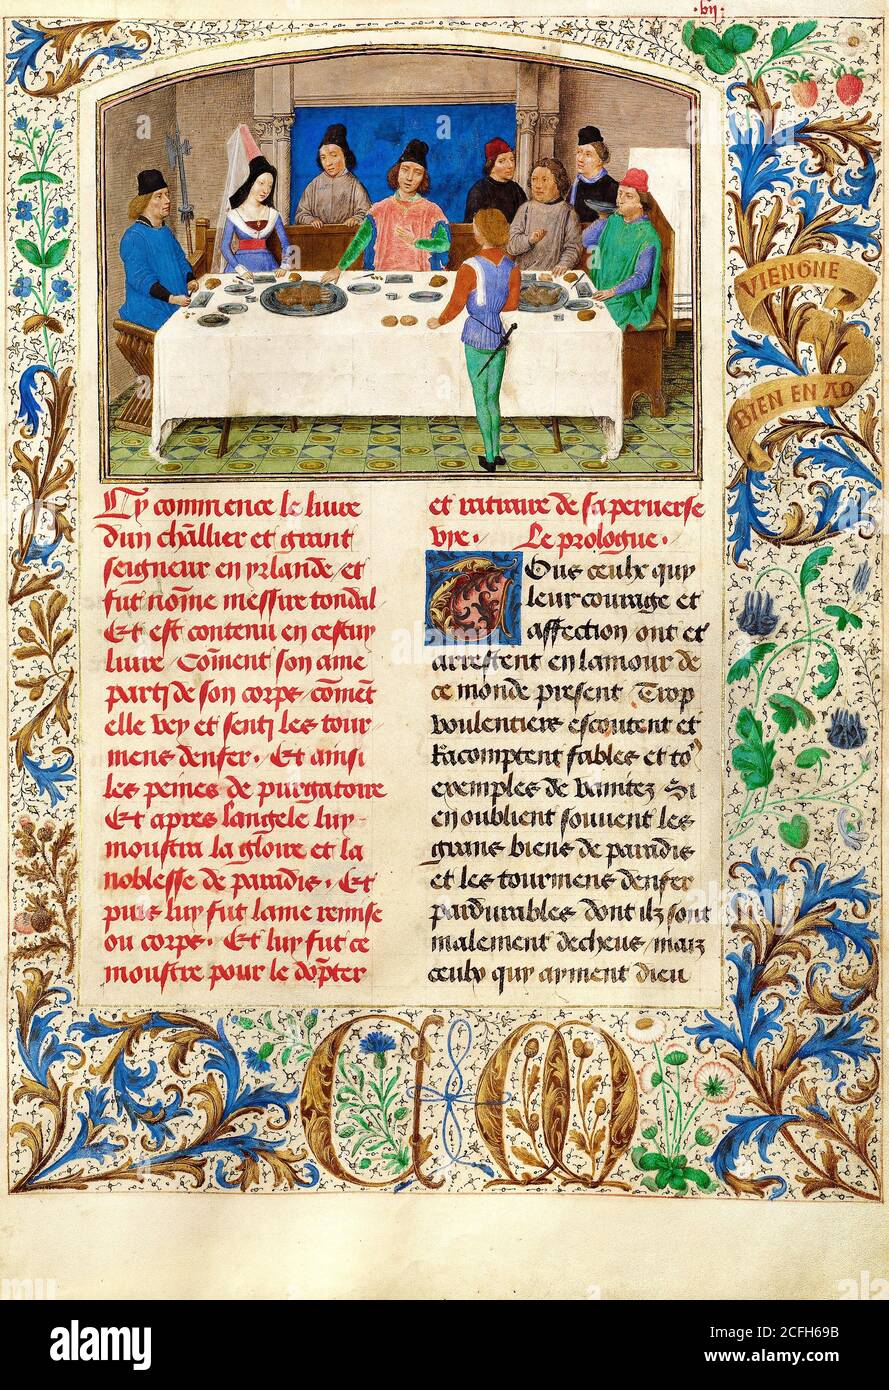 Simon Marmion, Tondal soffre un sequestro a cena 1475 Tempera, oro, inchiostro su pergamena, il J. Paul Getty Museum, Los Angeles, USA. Foto Stock